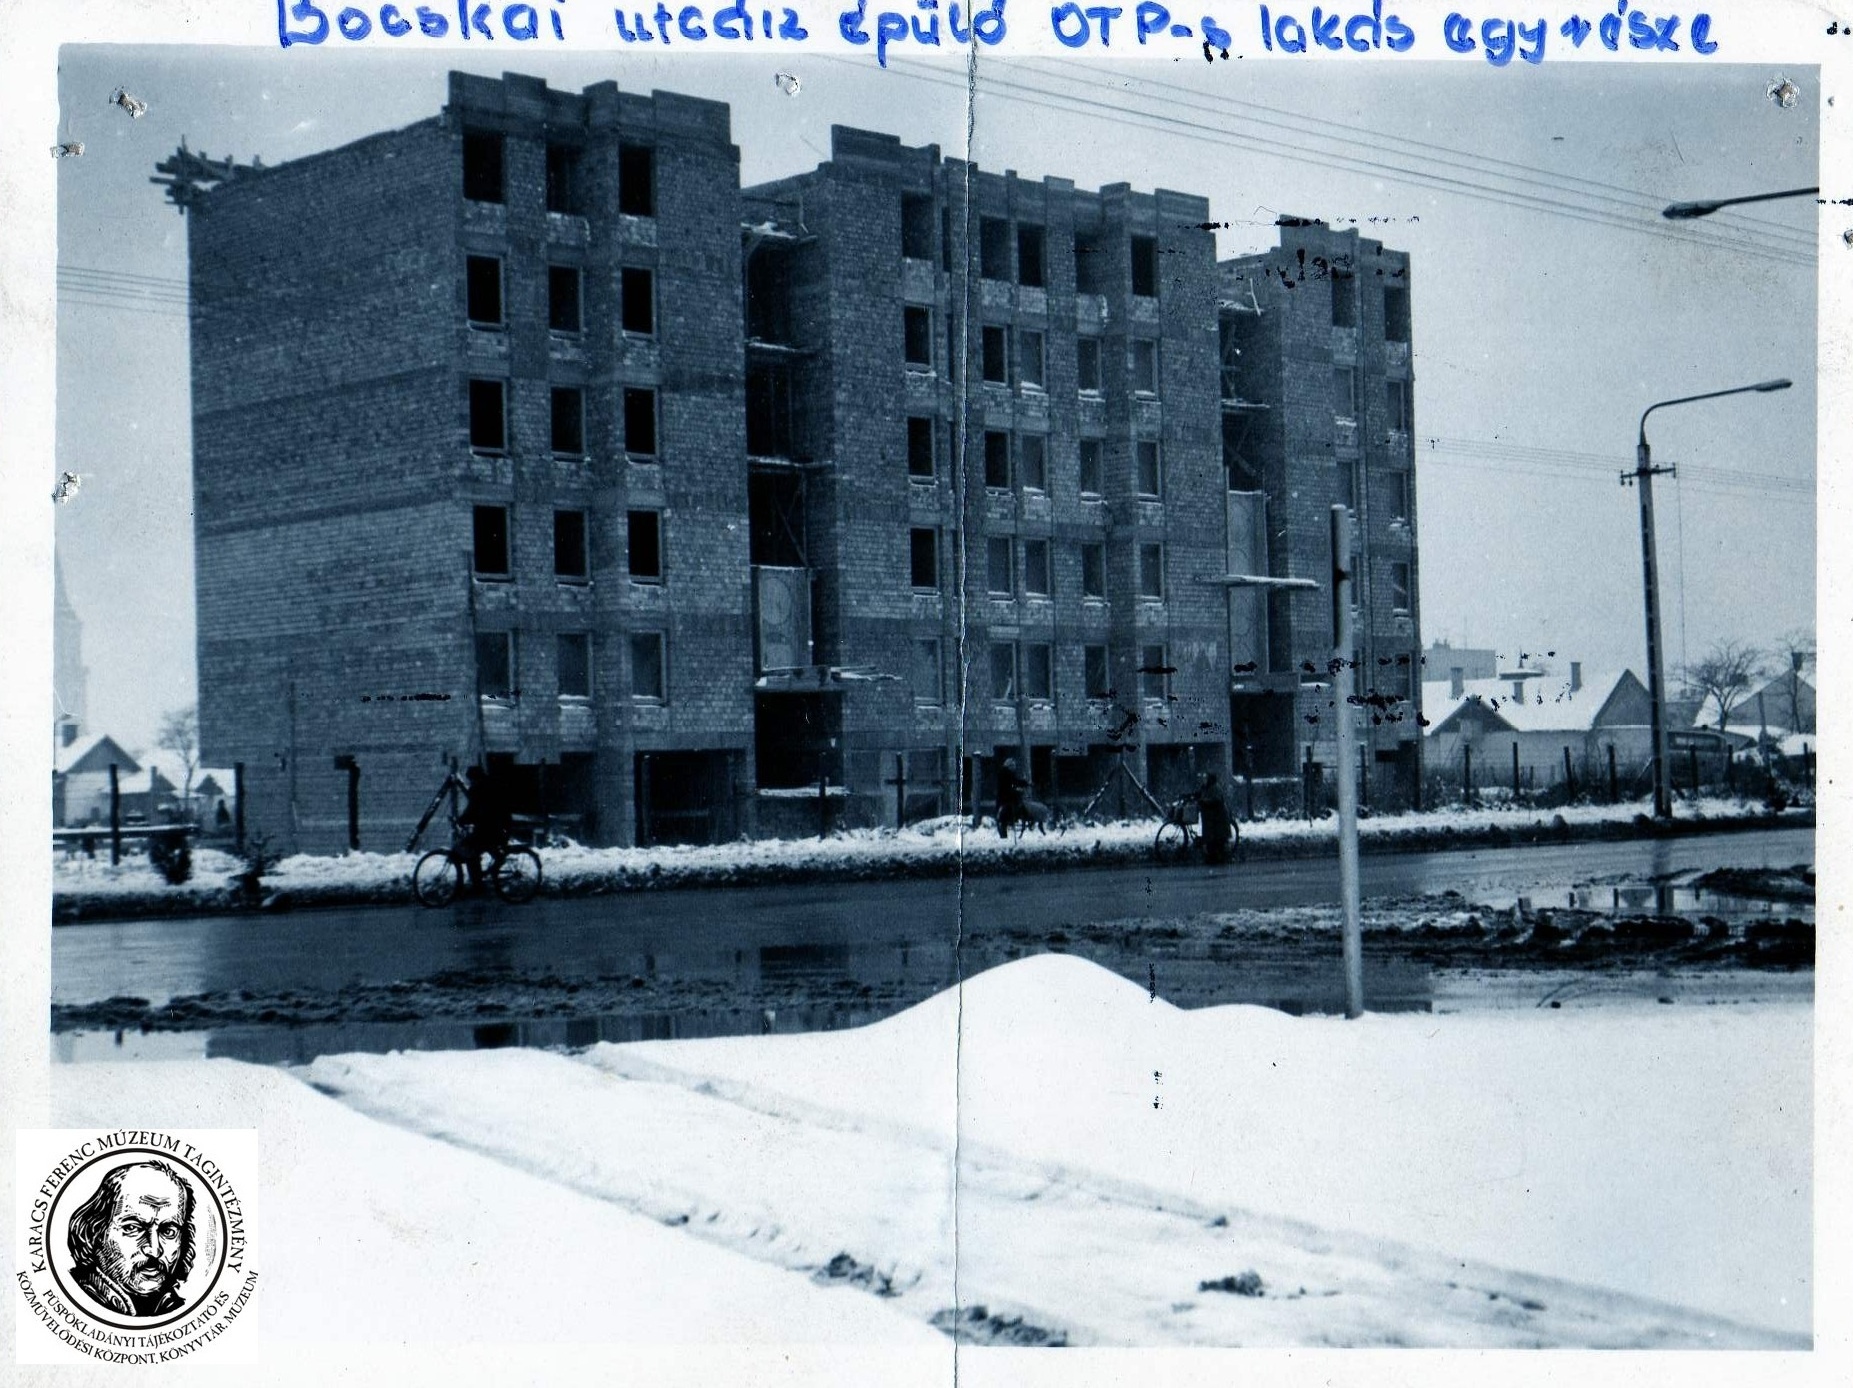 A Bocskai utcán épülő OTP-s lakás építése (Karacs Ferenc Múzeum, Püspökladány CC BY-NC-SA)